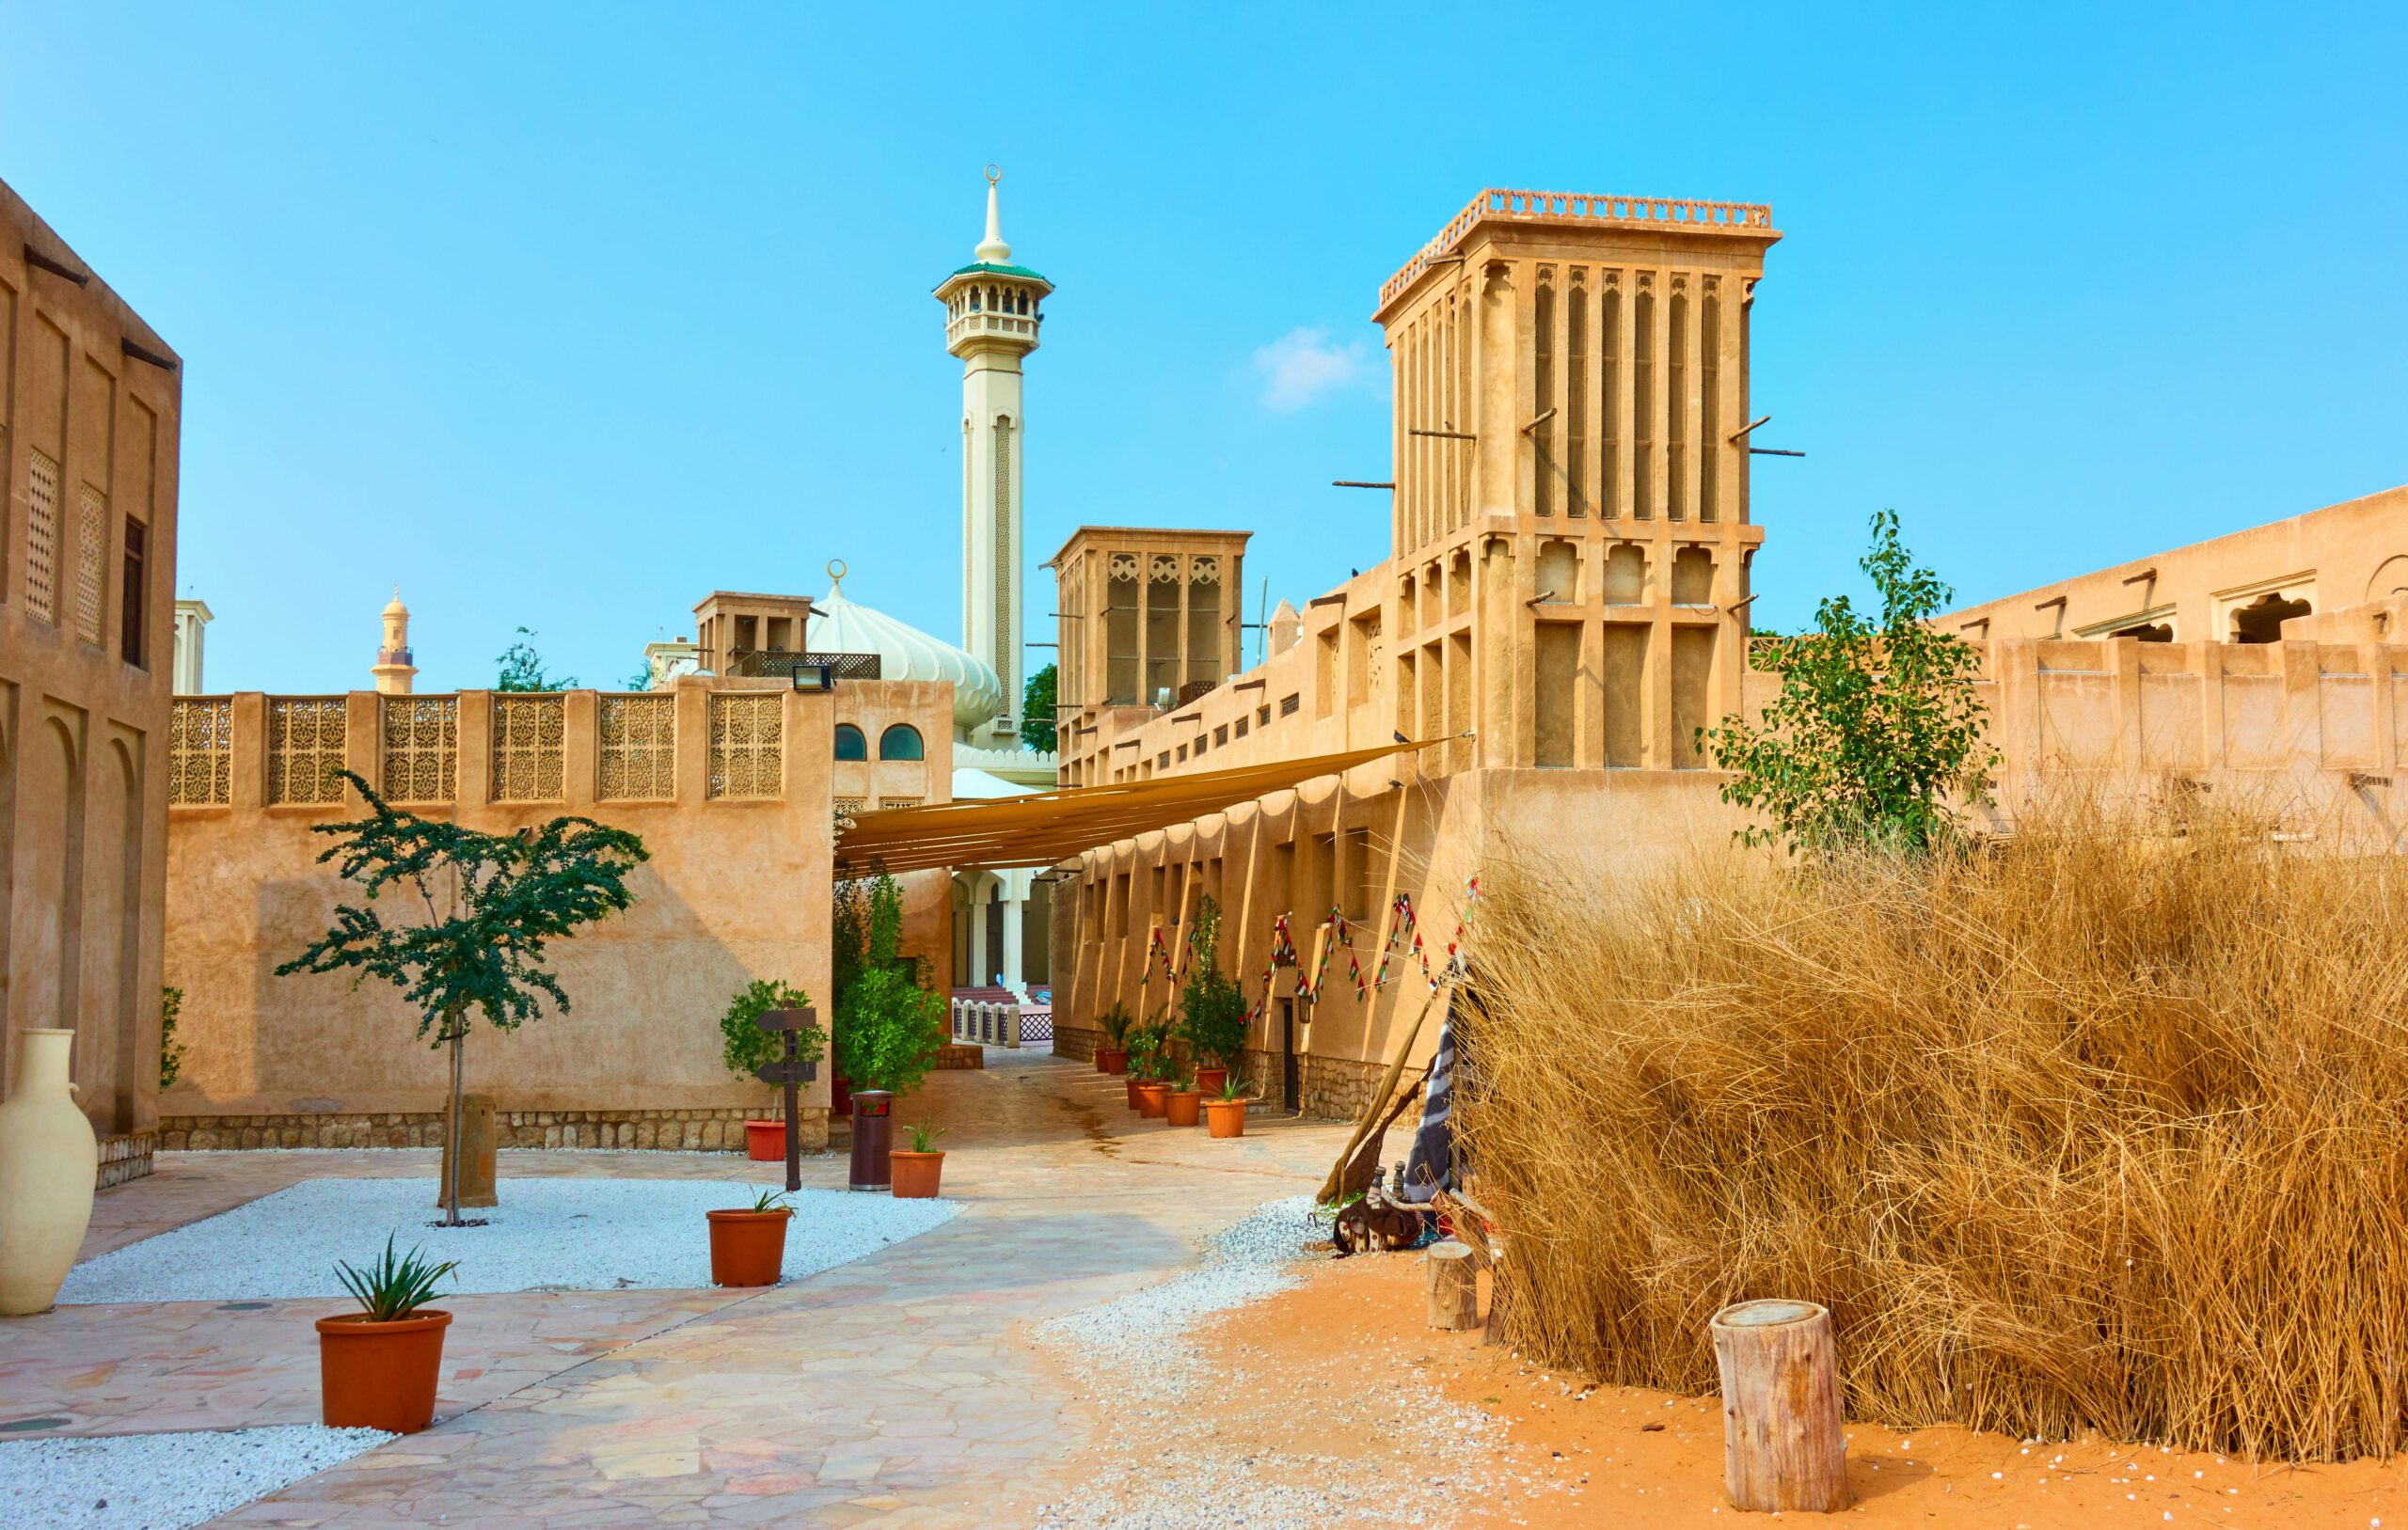 حي الفهيدي التاريخي (البستكية) - لمحة عامة عن الحي في دبي